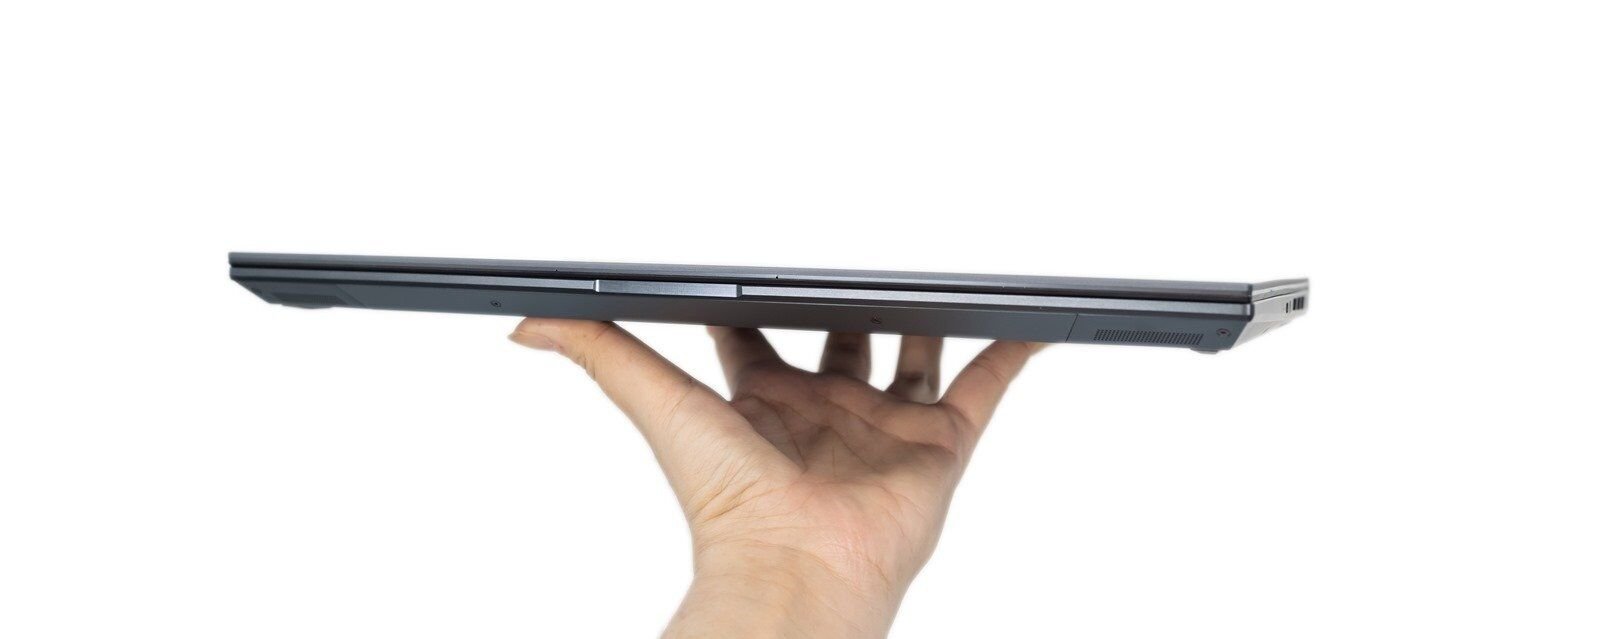 高規加上 OLED 螢幕 ASUS ZenBook Pro 15 OLED (UX535) 內外皆美！ @3C 達人廖阿輝